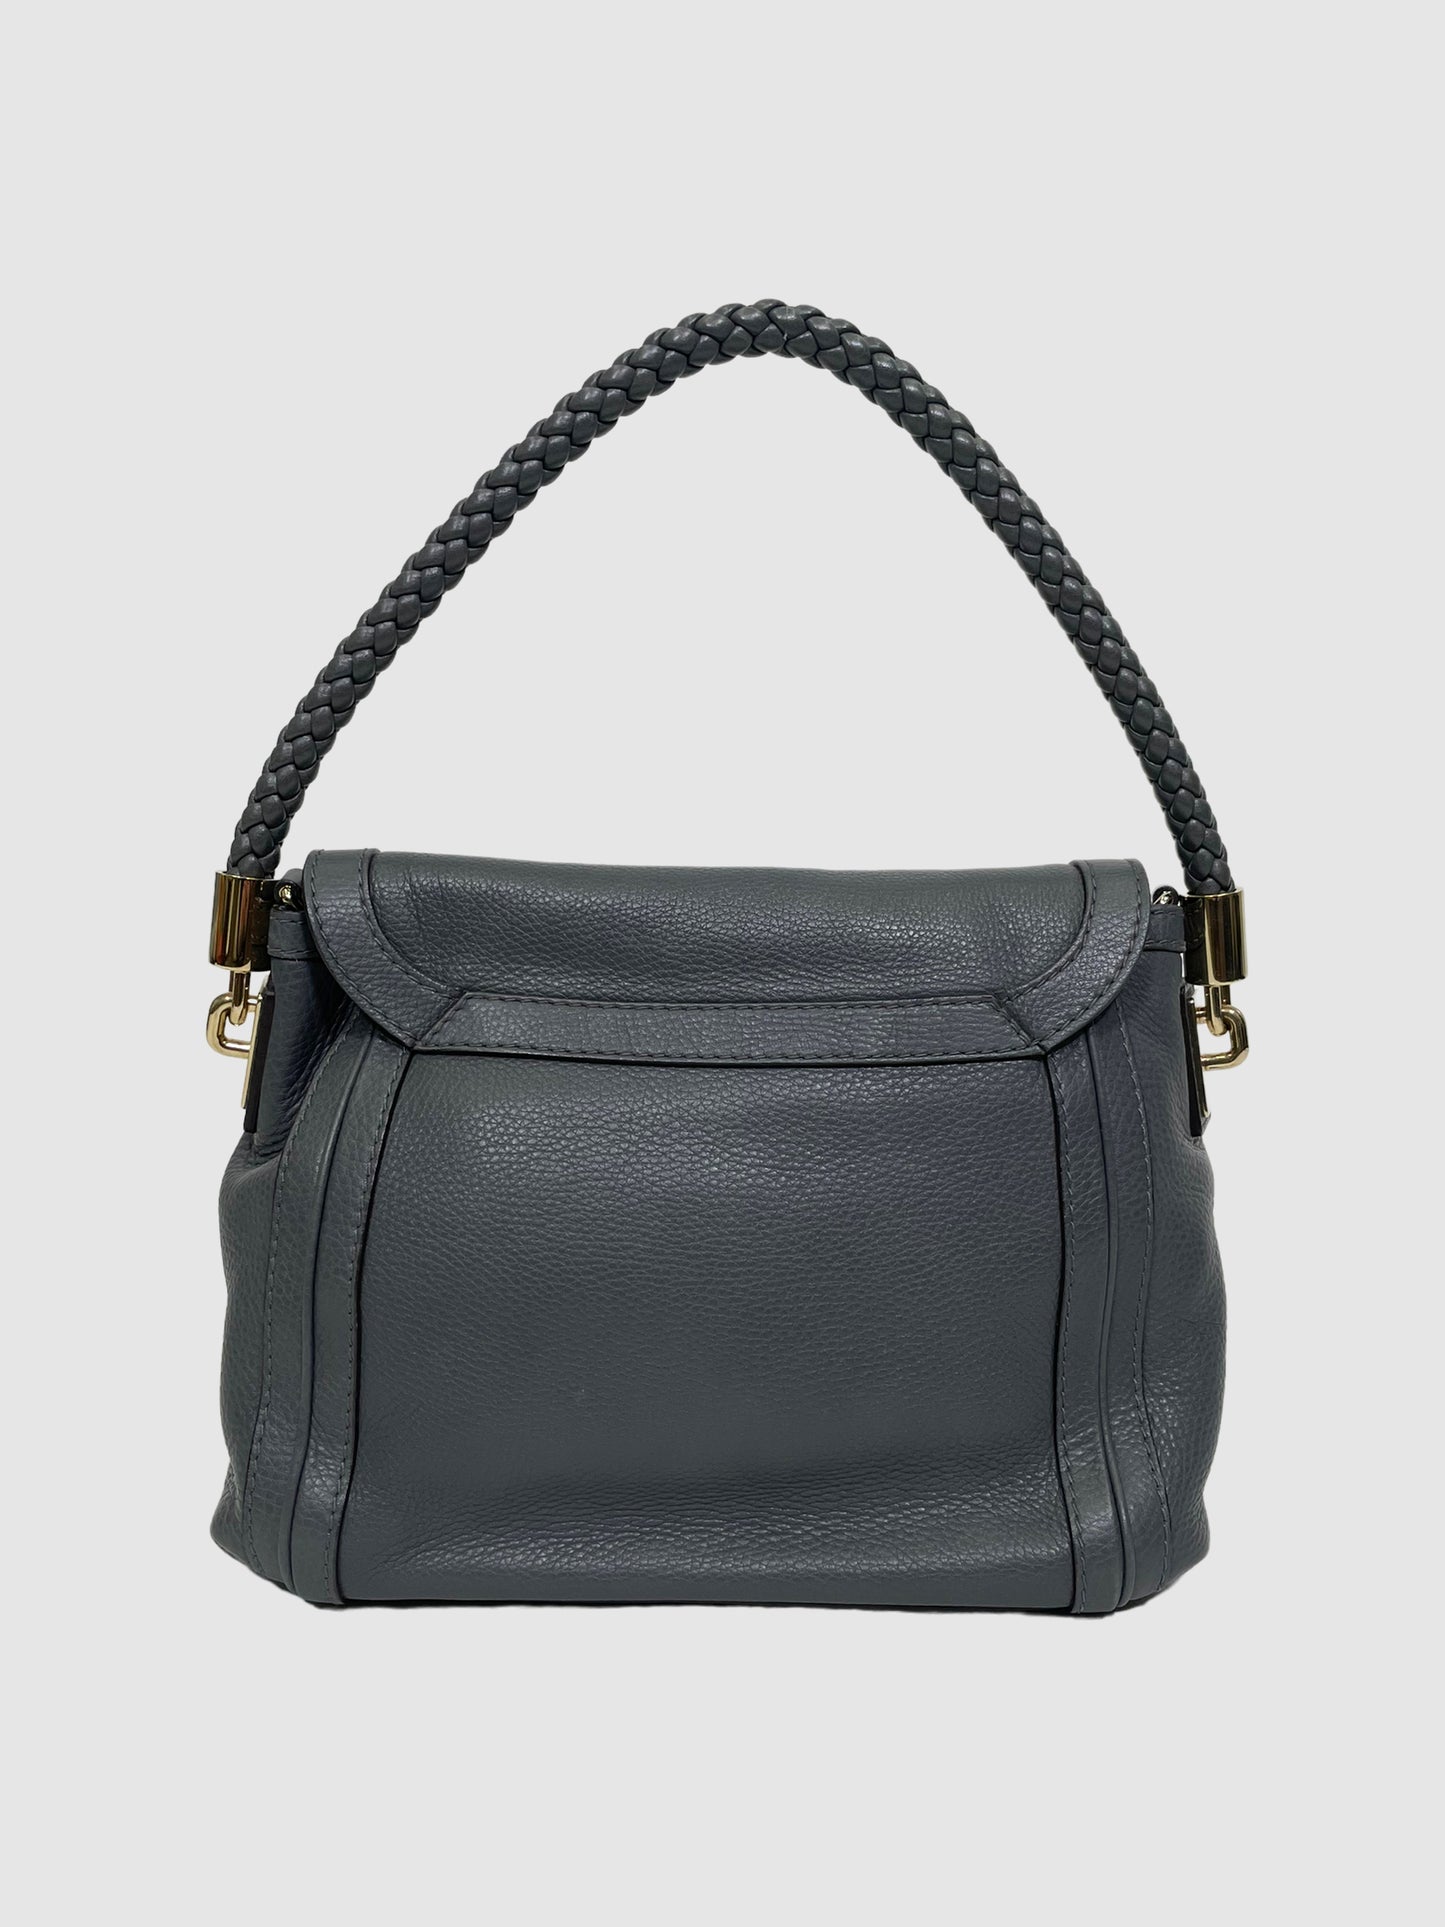 Gucci 'Bella' Flap Bag